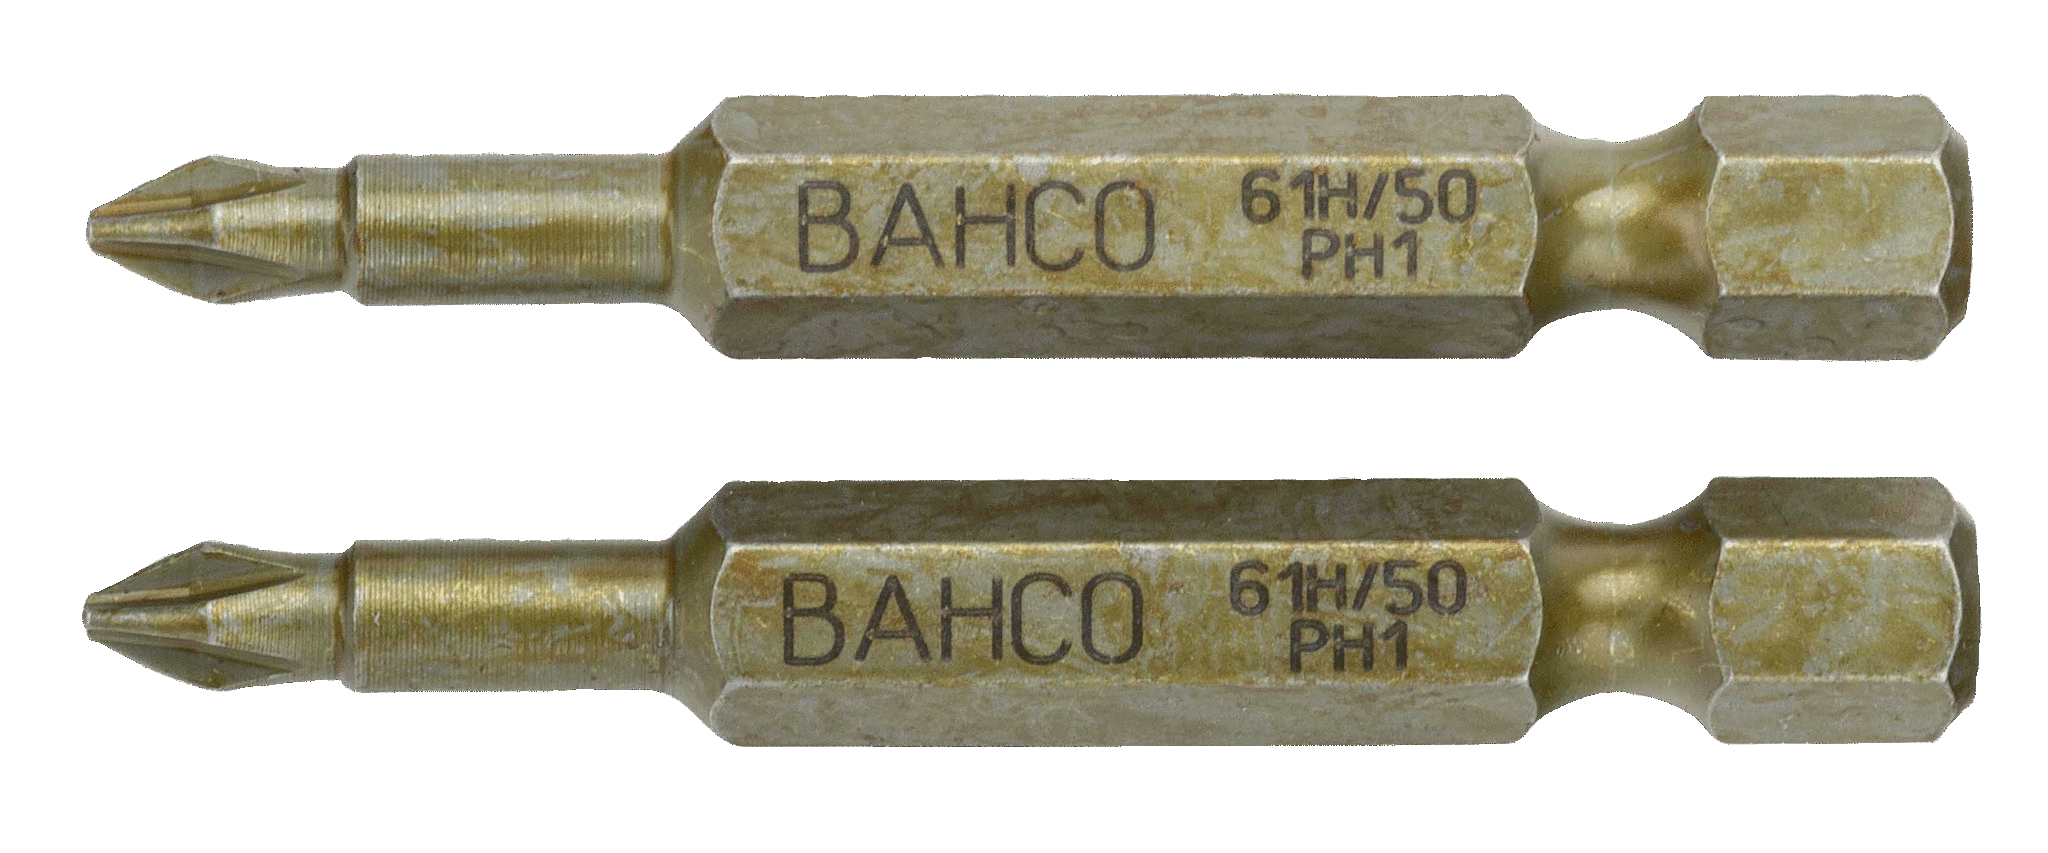 картинка Особо прочные торсионные биты для отверток Phillips, 50 мм BAHCO 61H/50PH1 от магазина "Элит-инструмент"